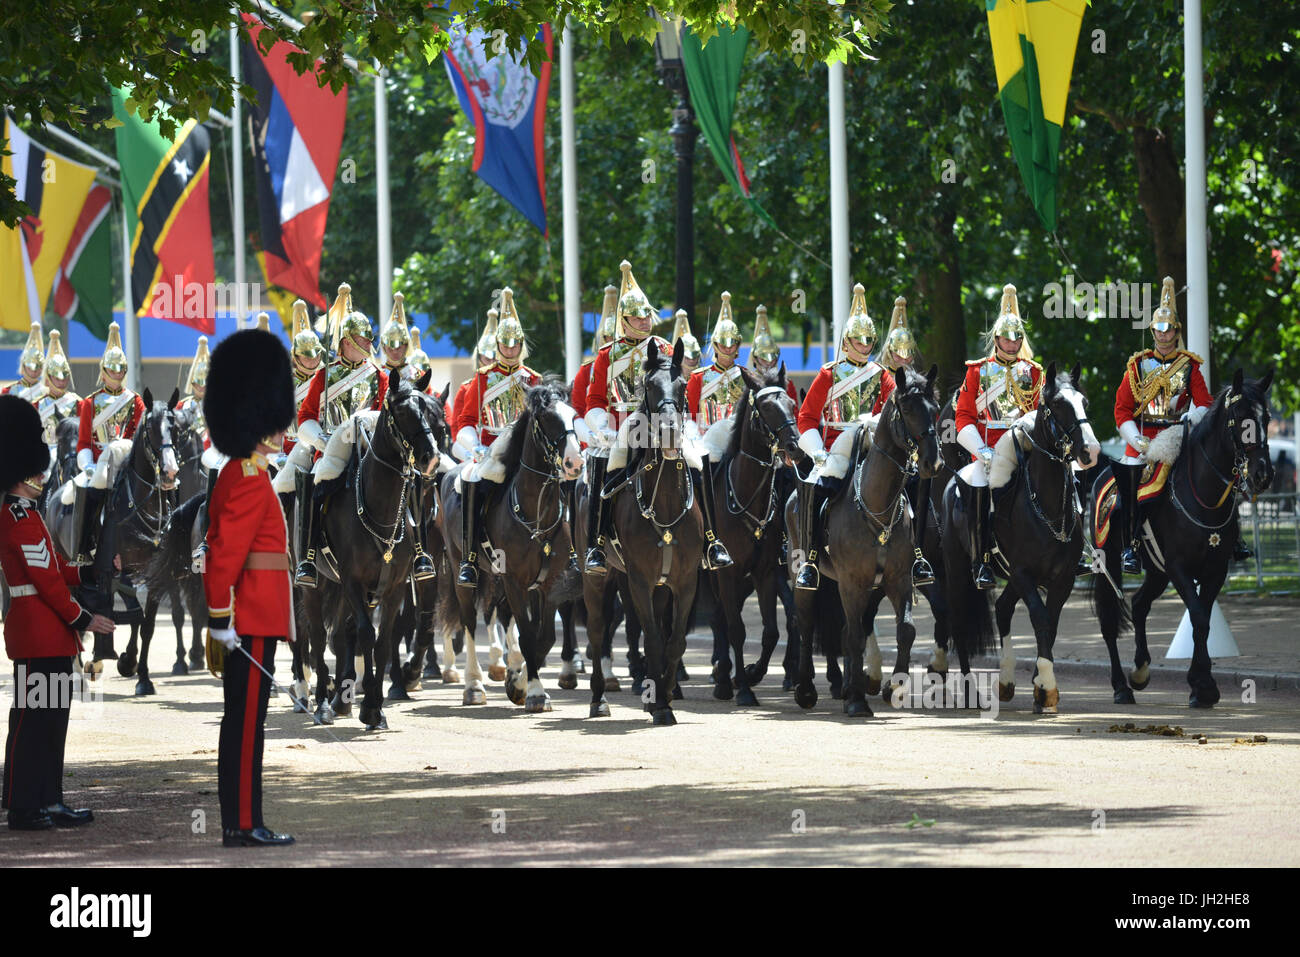 Le Mall, Londres, Royaume-Uni. 12 juillet, 2017. La famille royale en procession de Horse Guards Parade au palais de Buckingham. Crédit : Matthieu Chattle/Alamy Live News Banque D'Images